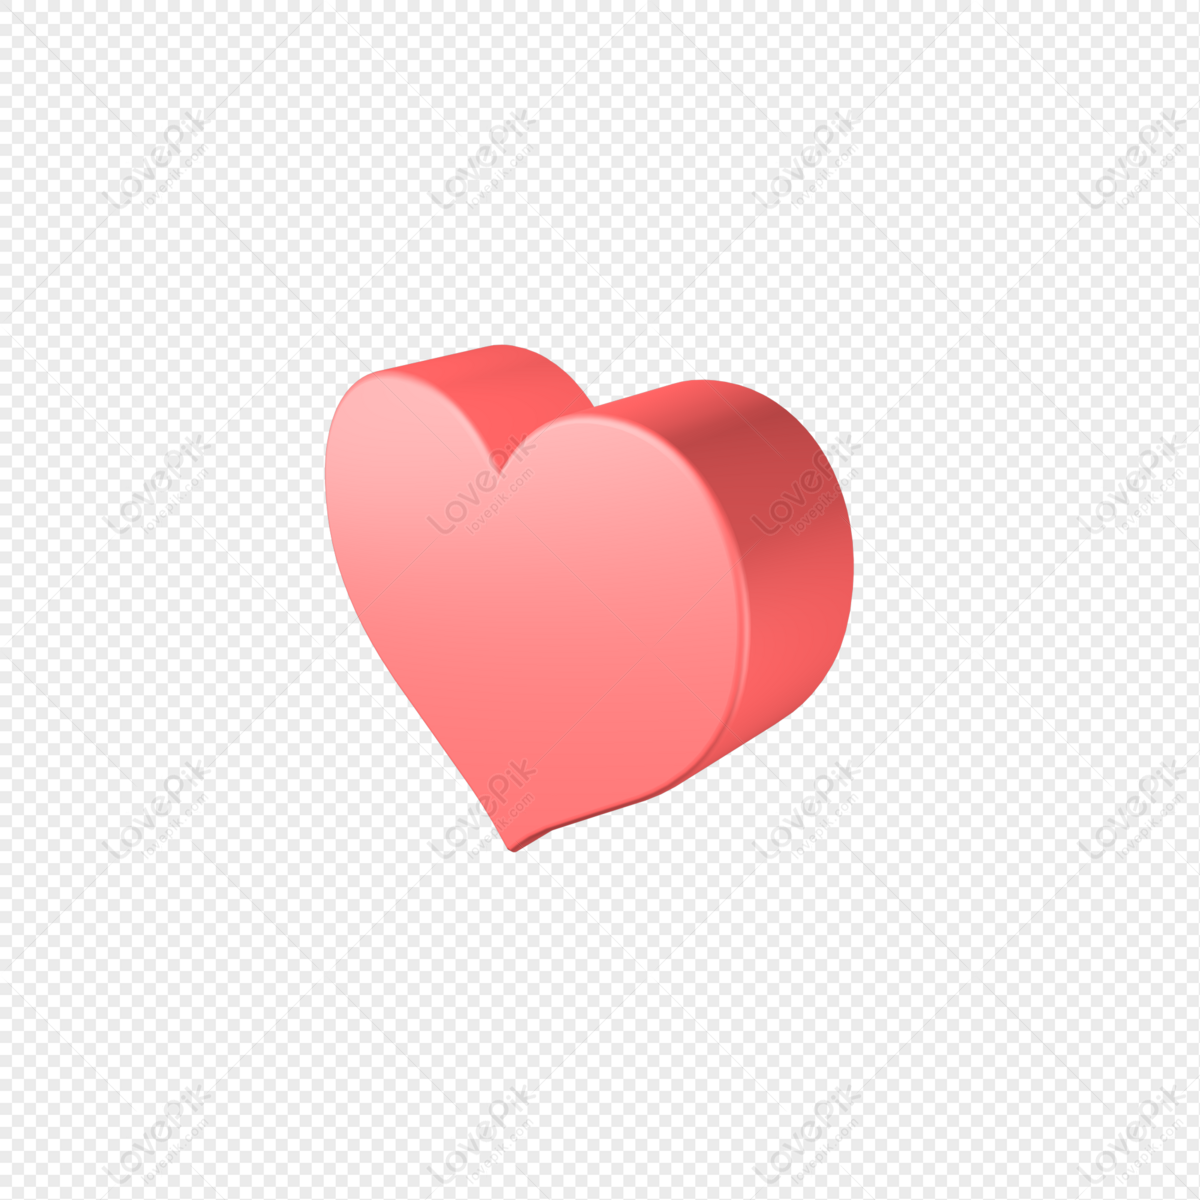 Trái tim đỏ ba chiều: Trái tim đỏ ba chiều là một trong những biểu tượng vừa đẹp mắt, đầy sức sống và cũng đầy ý nghĩa. Ba chiều của trái tim tượng trưng cho sự quan tâm, chăm sóc và yêu thương của người tạo ra. Hãy cùng ngắm nhìn những hình ảnh liên quan đến trái tim đỏ ba chiều để cảm nhận sự đẹp và ý nghĩa của nó nhé.